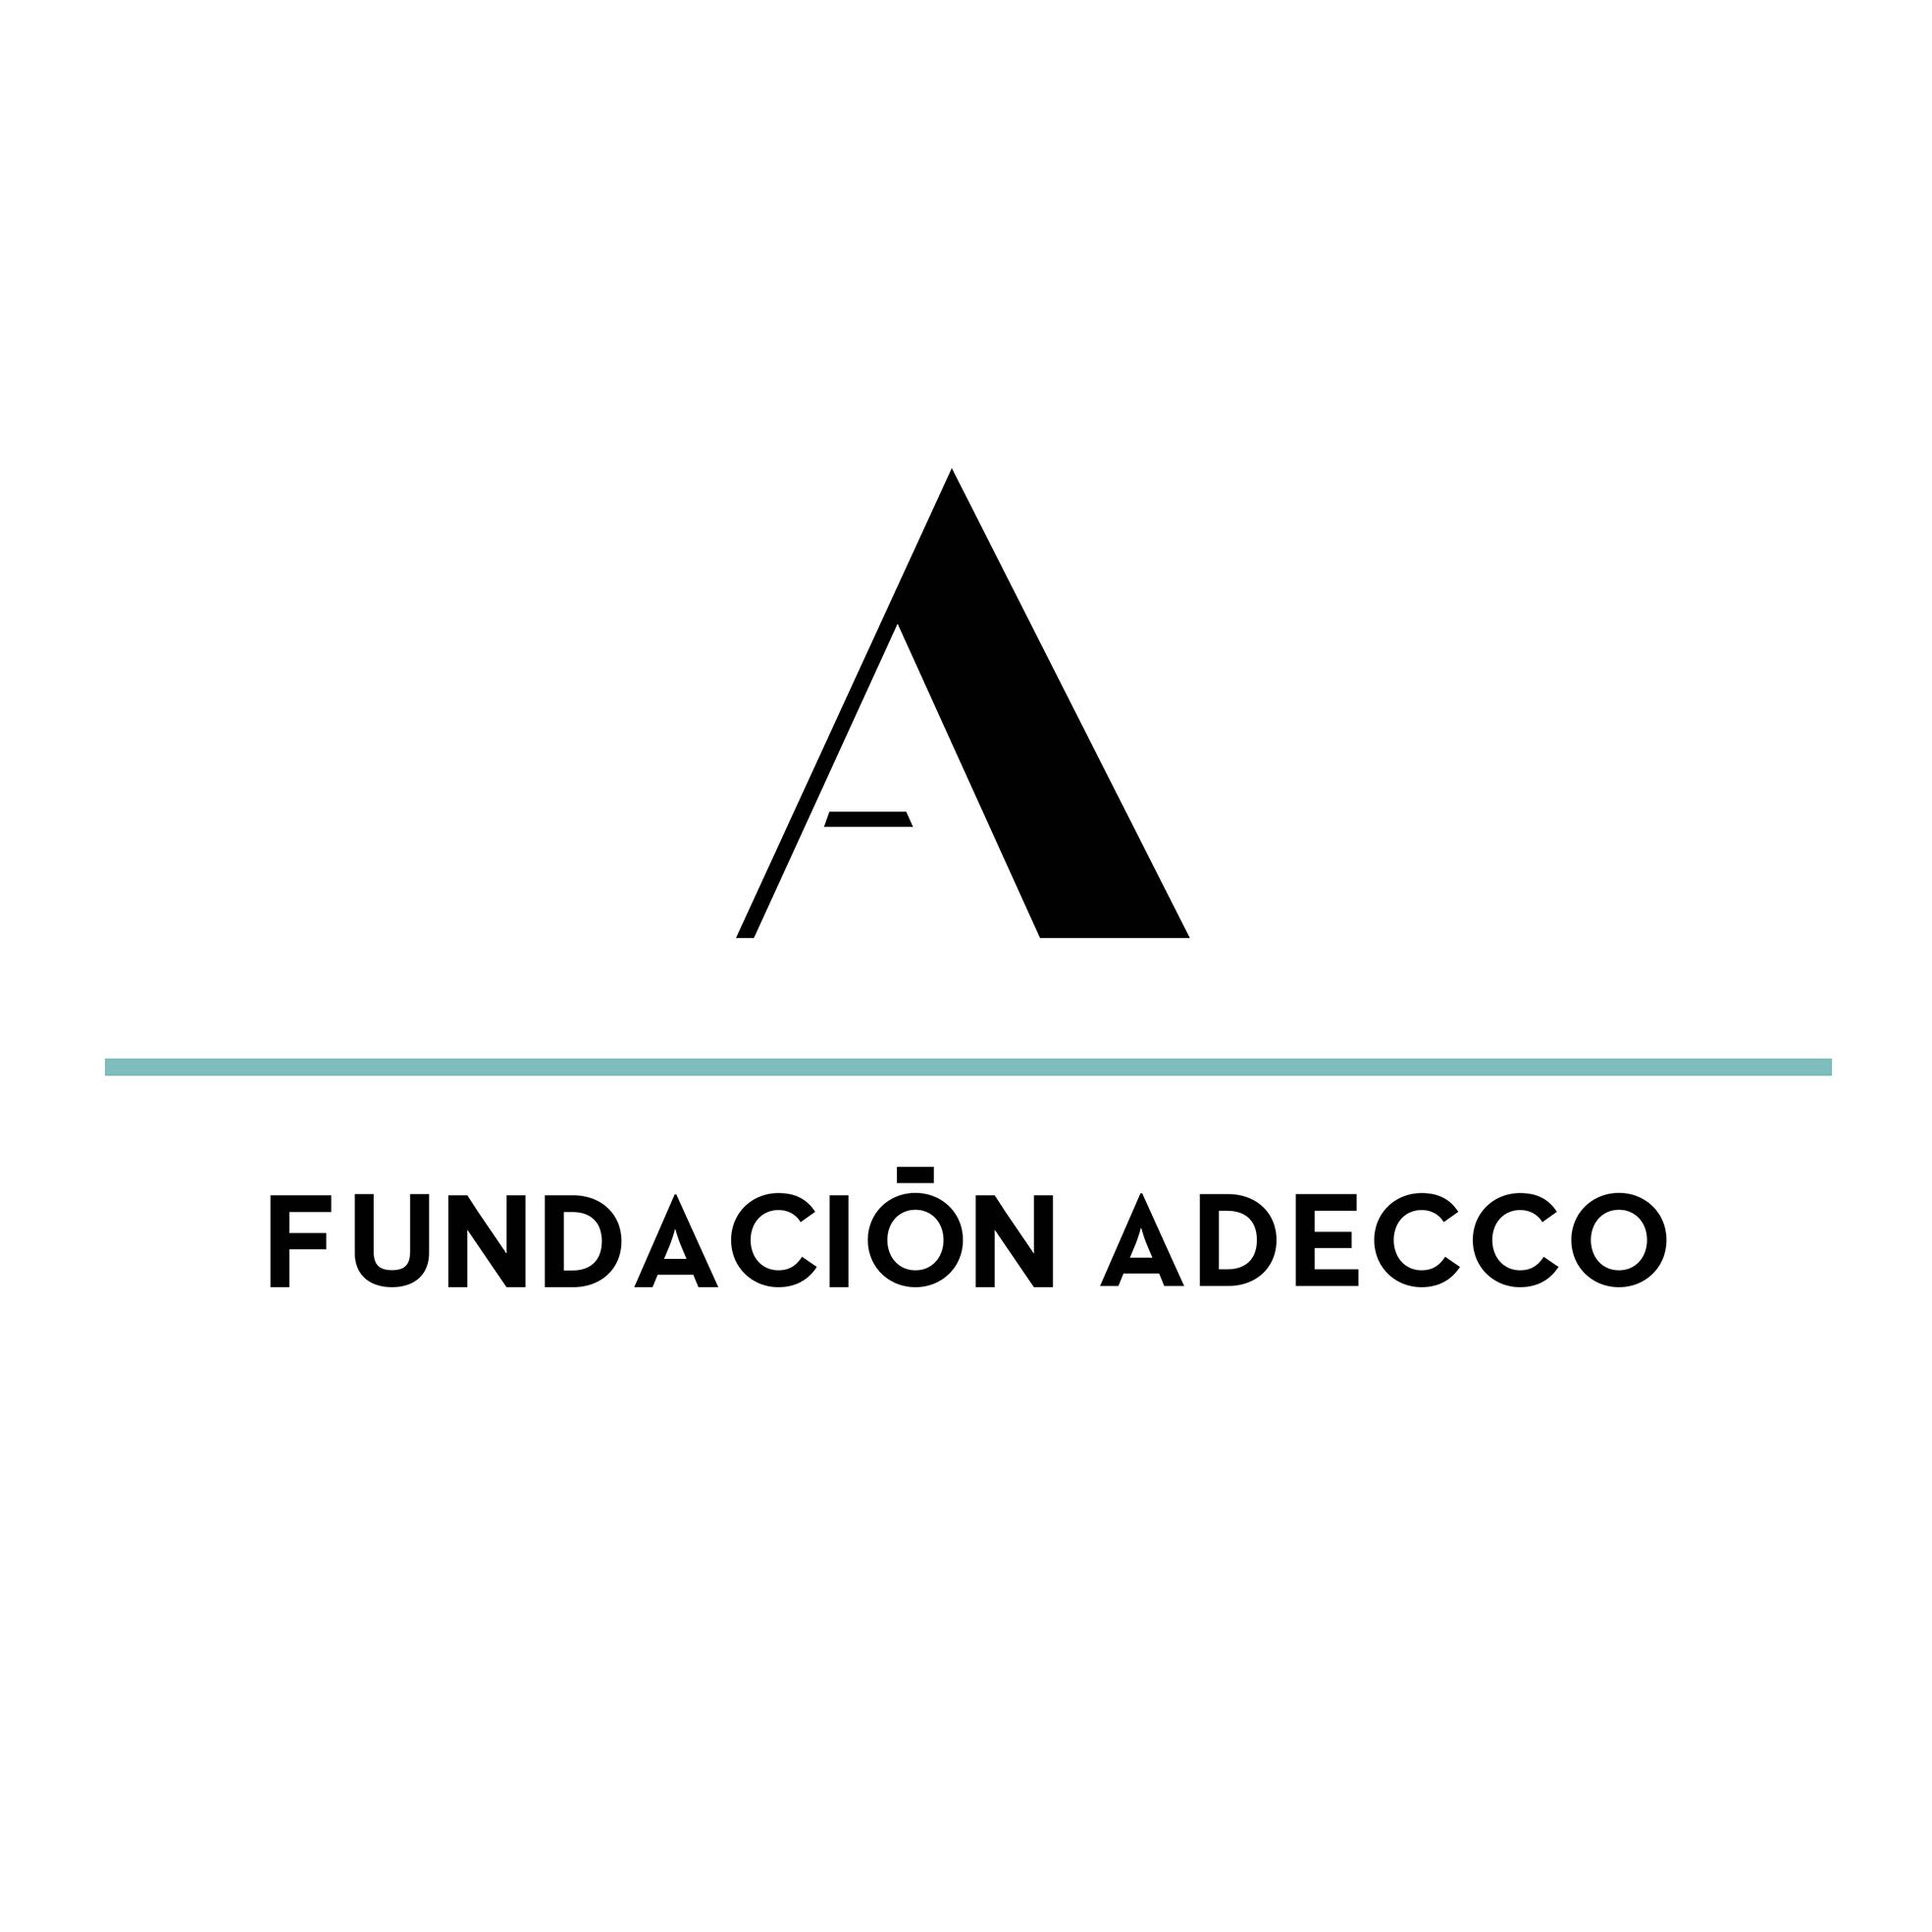 FUNDACION ADECCO